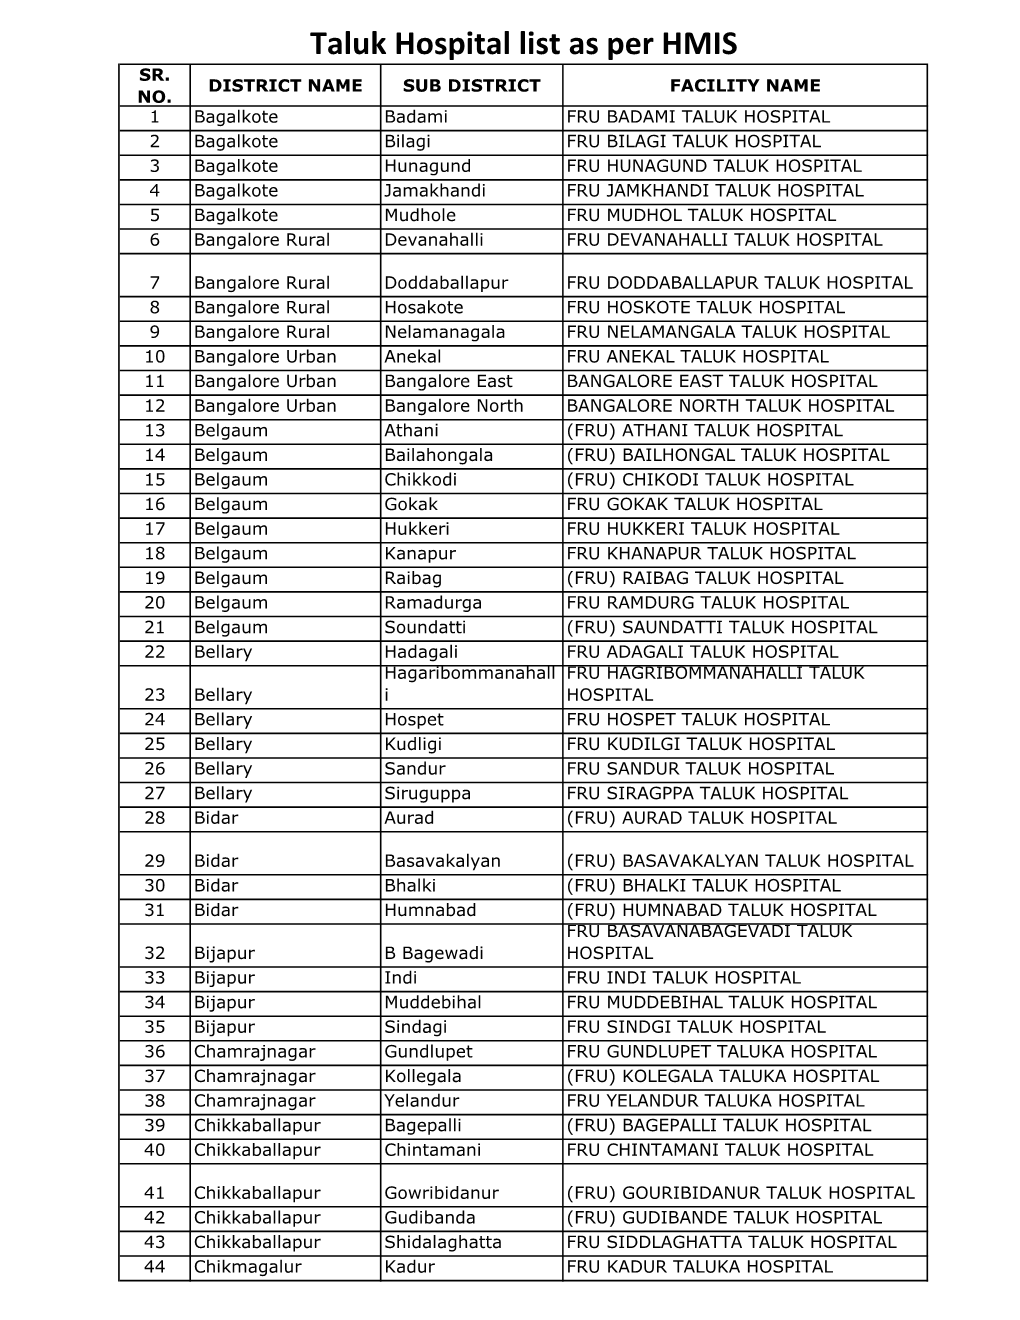 Taluk Hospital List As Per HMIS SR